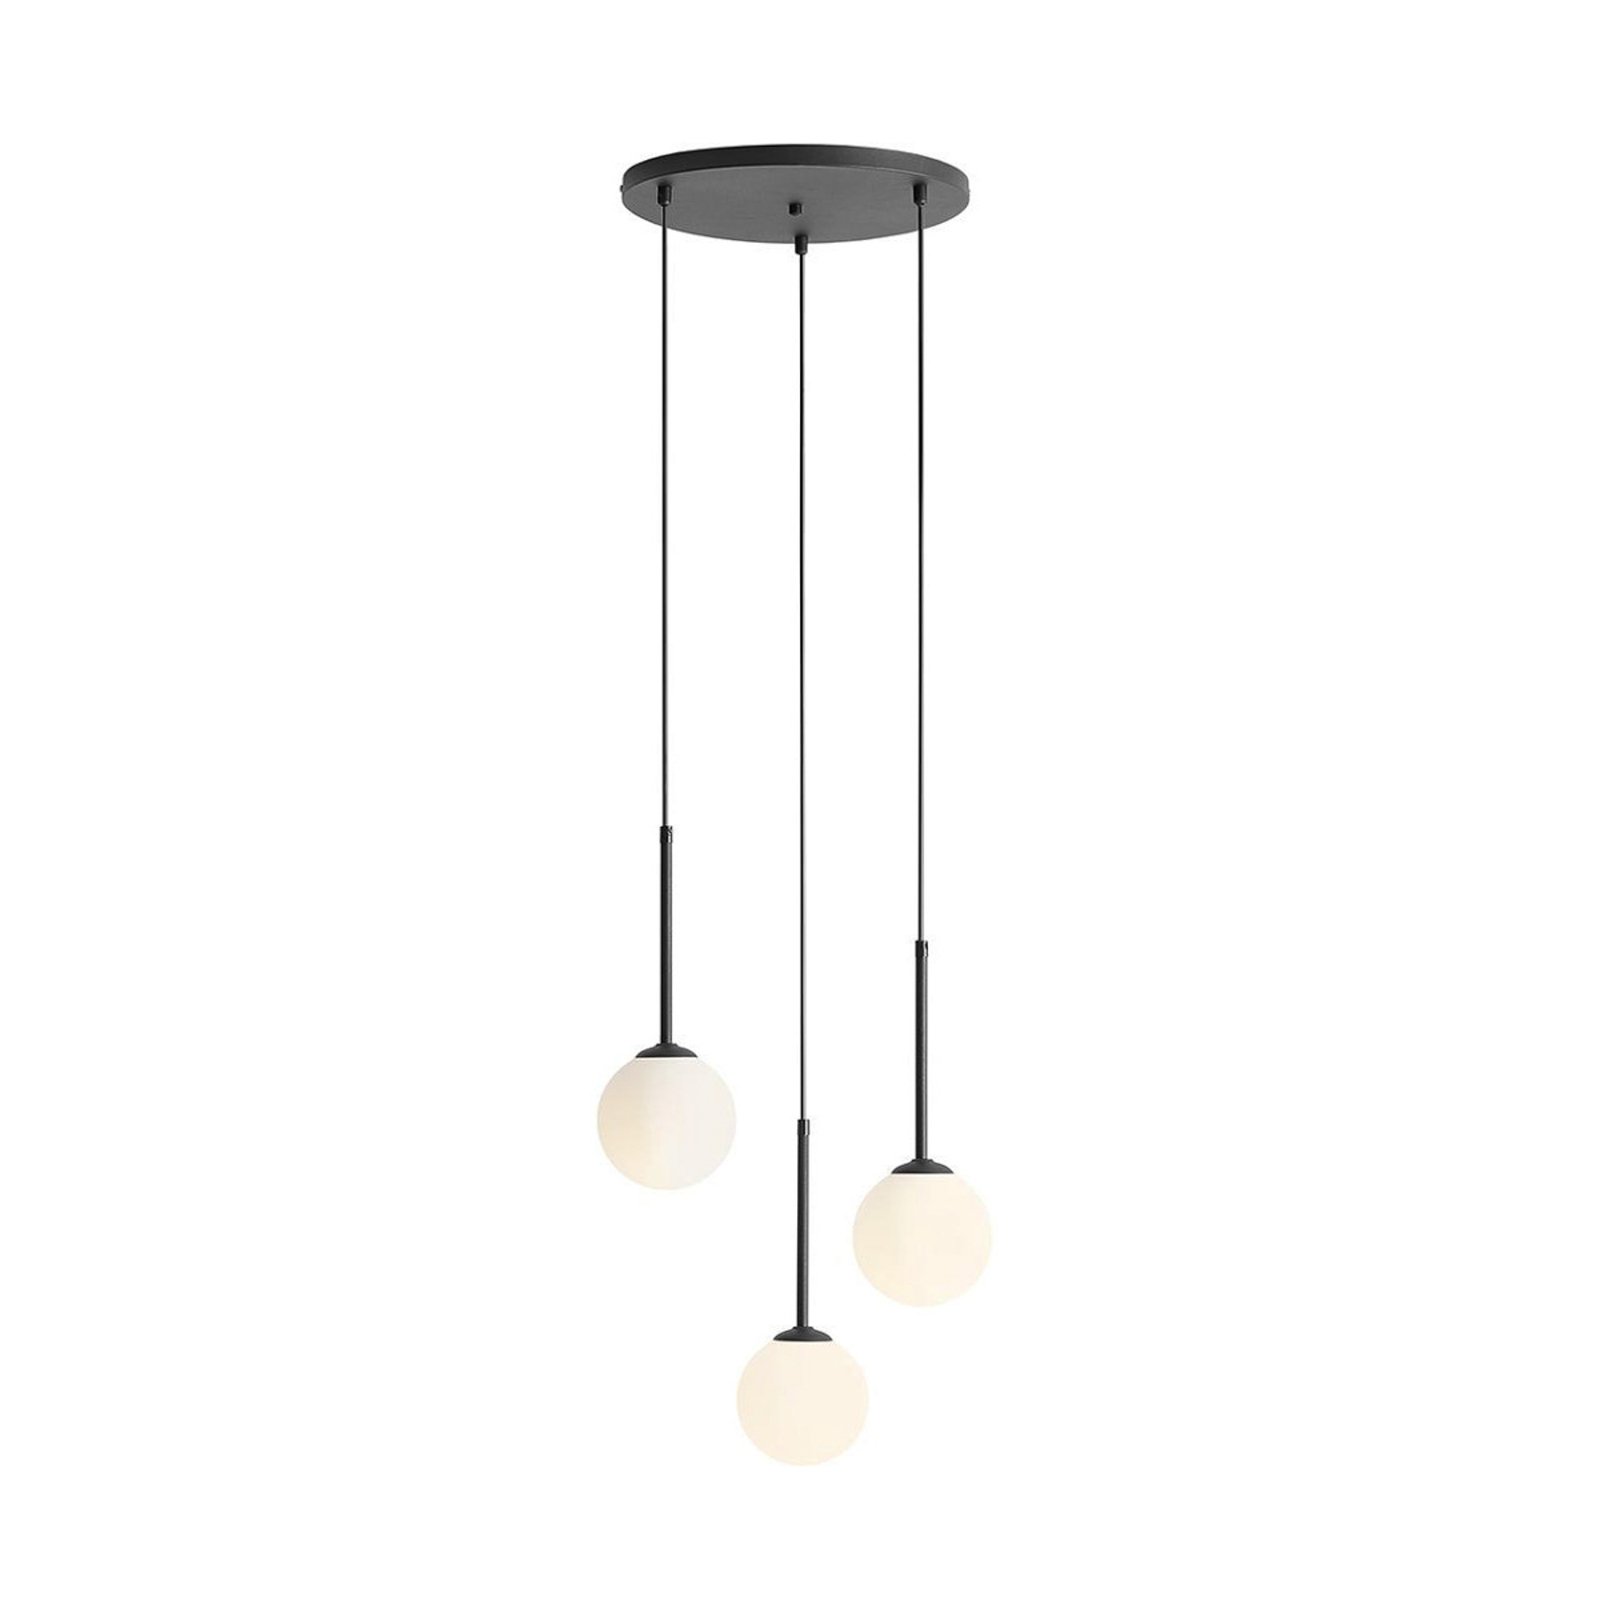 Hanglamp Joel, zwart/wit, Rondel, 3-lamps